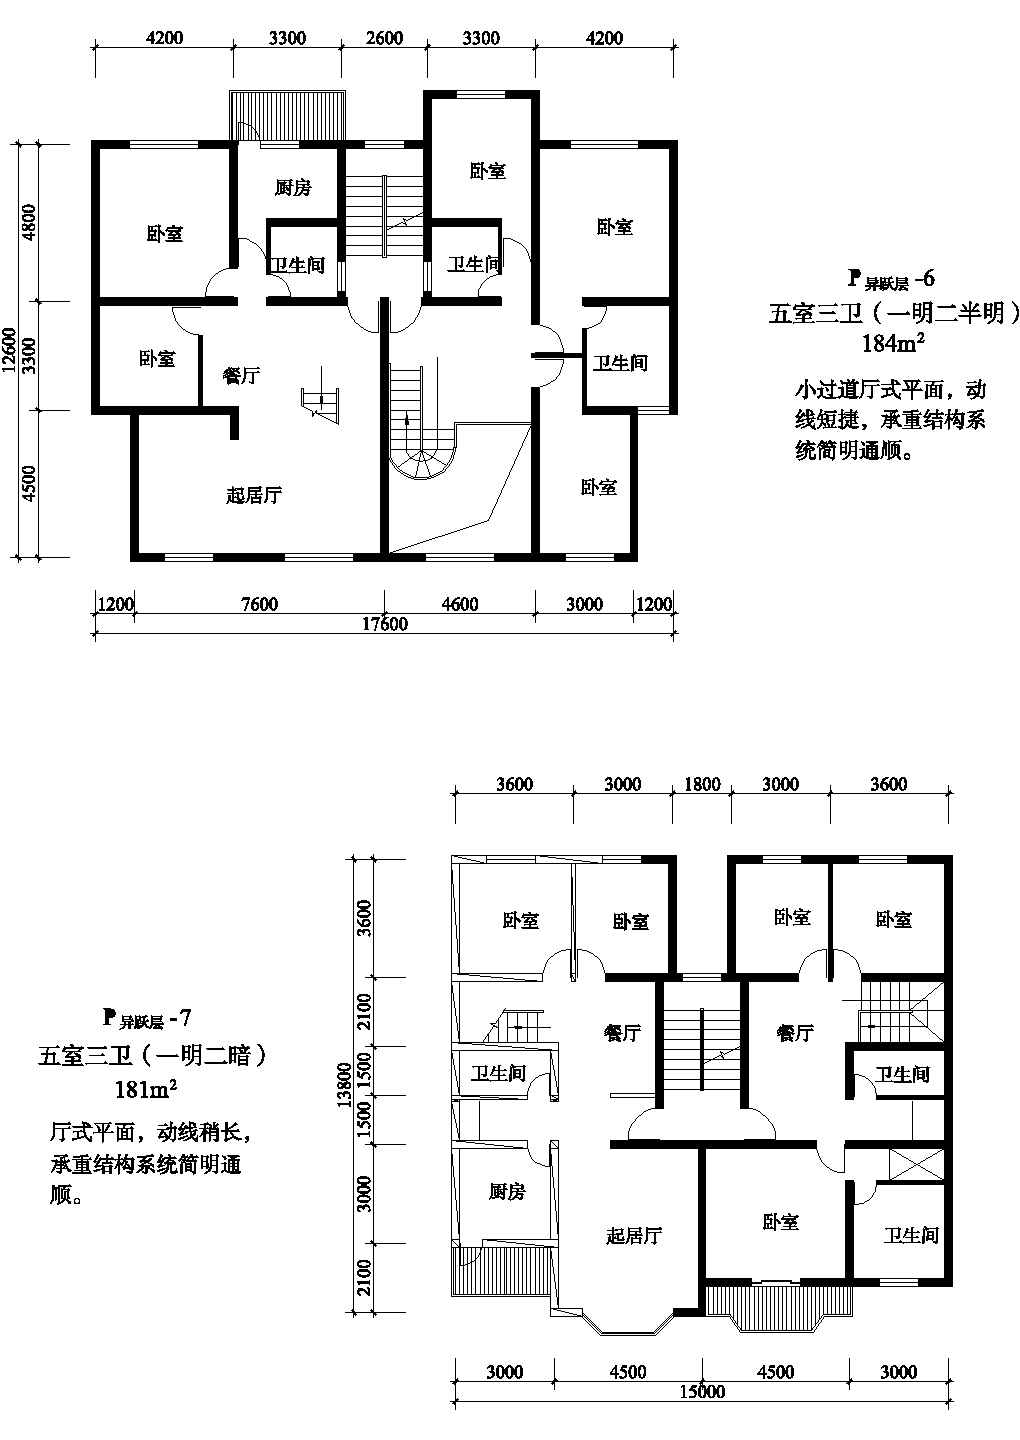 复式一梯两户四室二厅户型设计CAD图纸